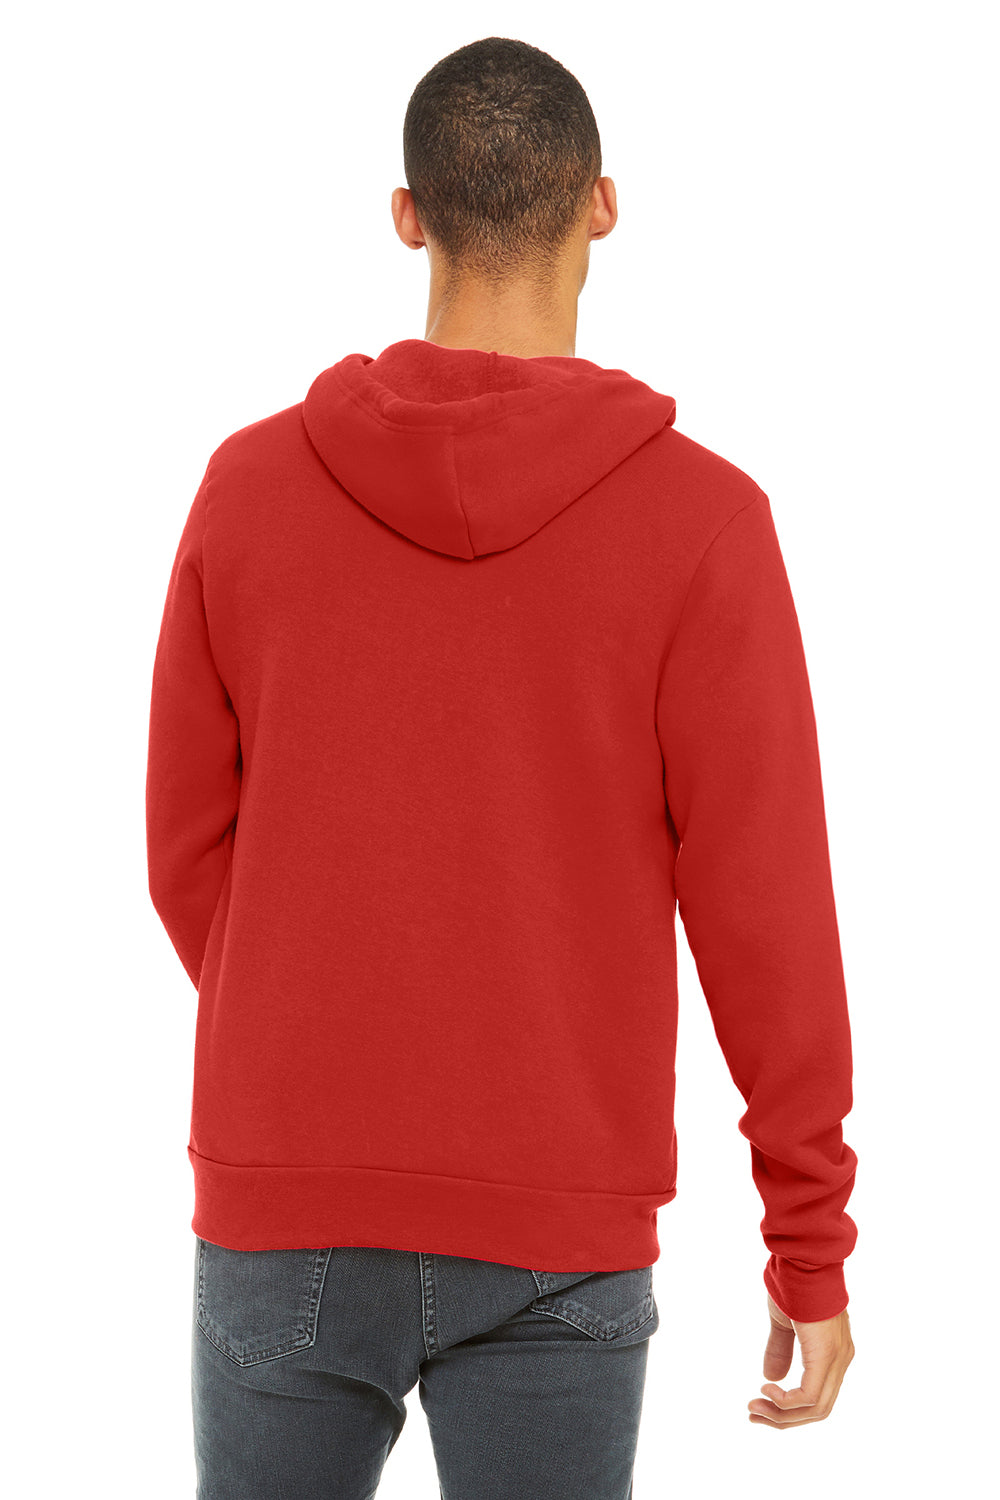 Bella + Canvas BC3739/3739 Mens Fleece Full Zip Hooded Sweatshirt Hoodie Red Model Back